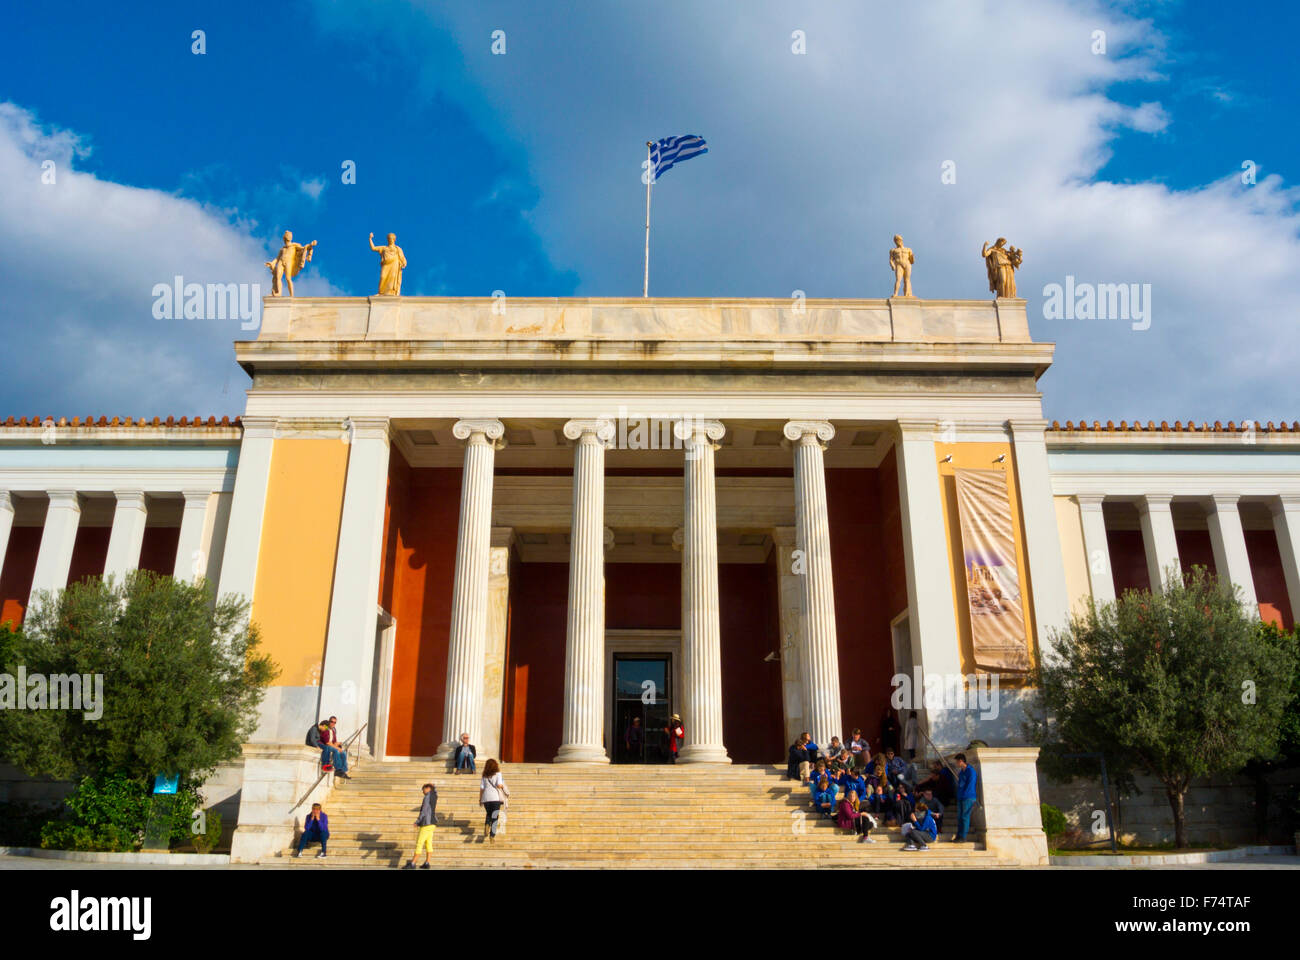 Museo Nacional de Arqueología, de Exarcheia, Atenas, Grecia Foto de stock